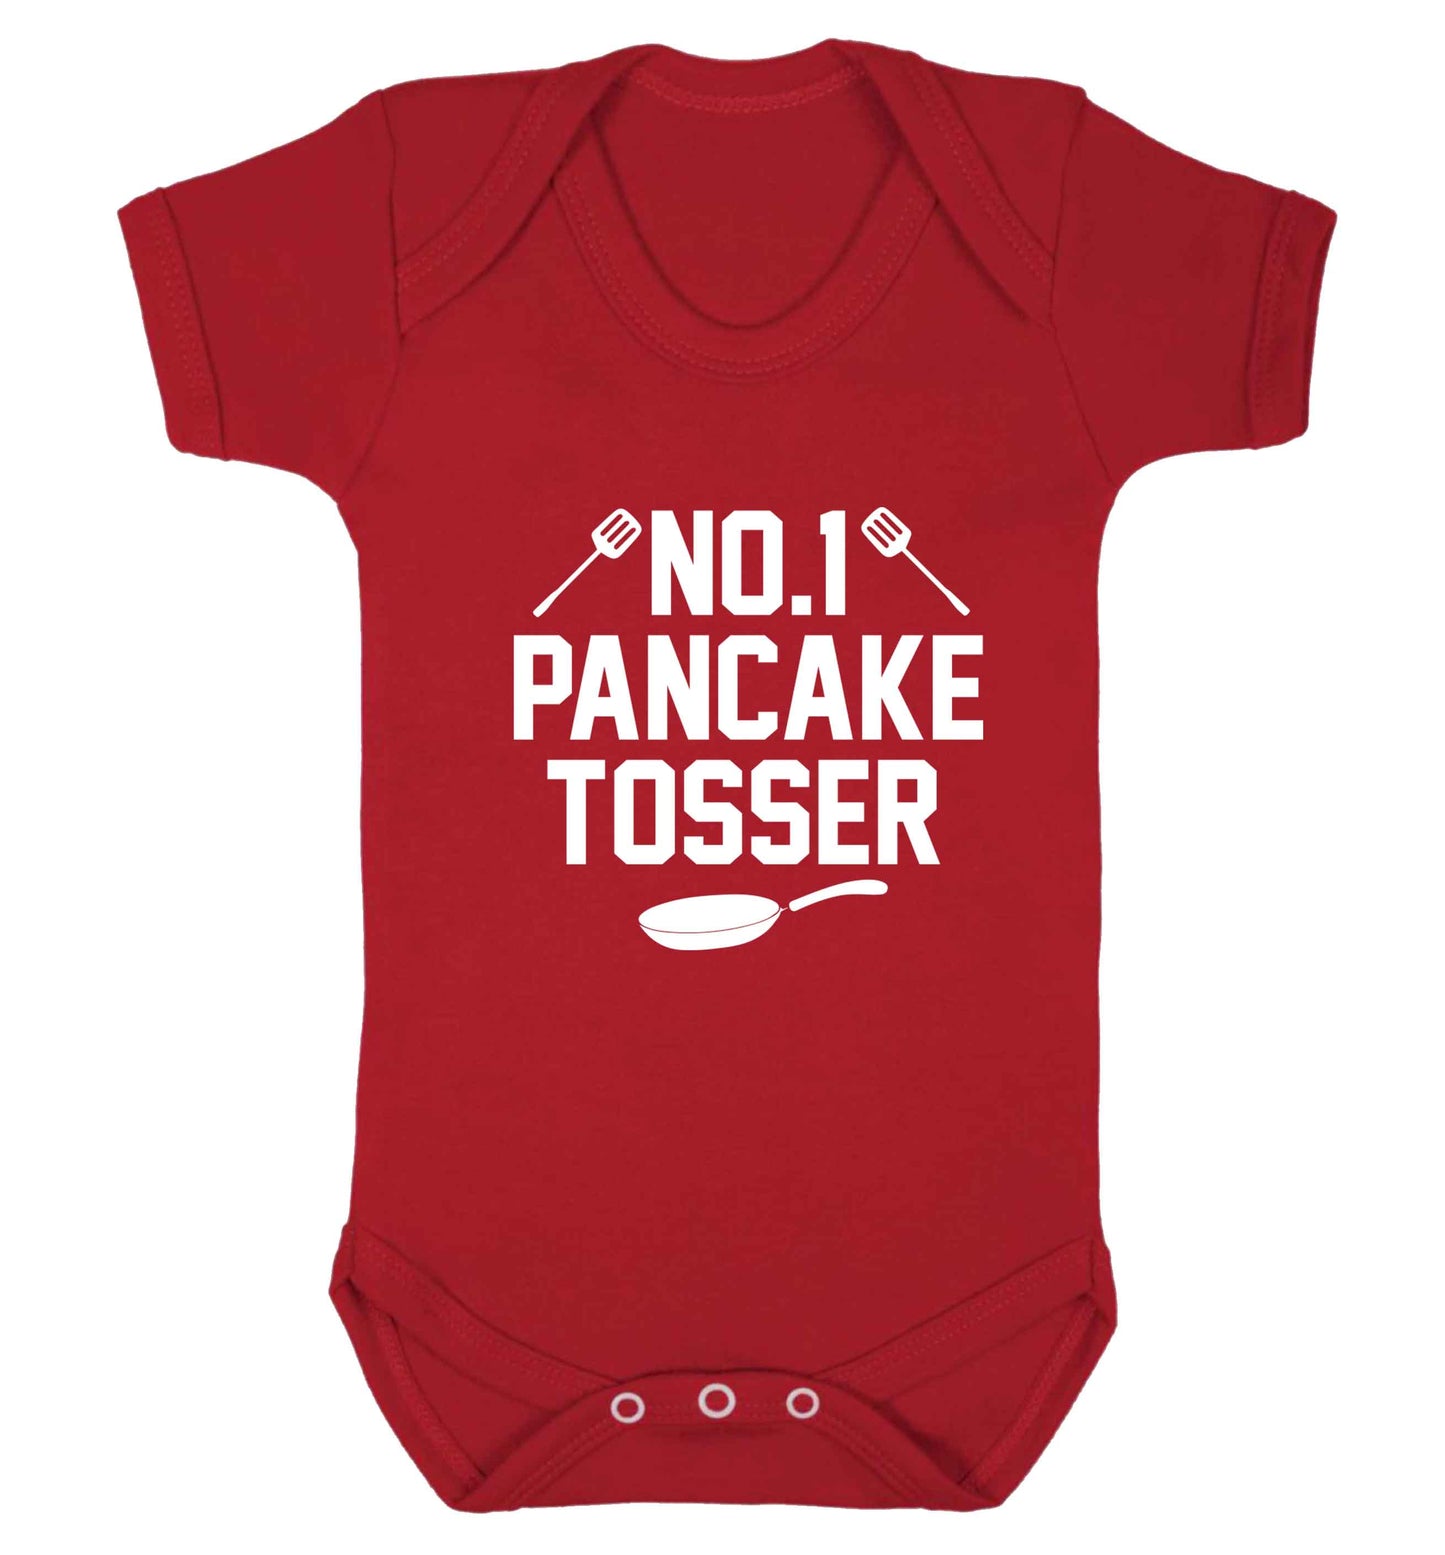 No.1 Pancake tosser baby vest red 18-24 months